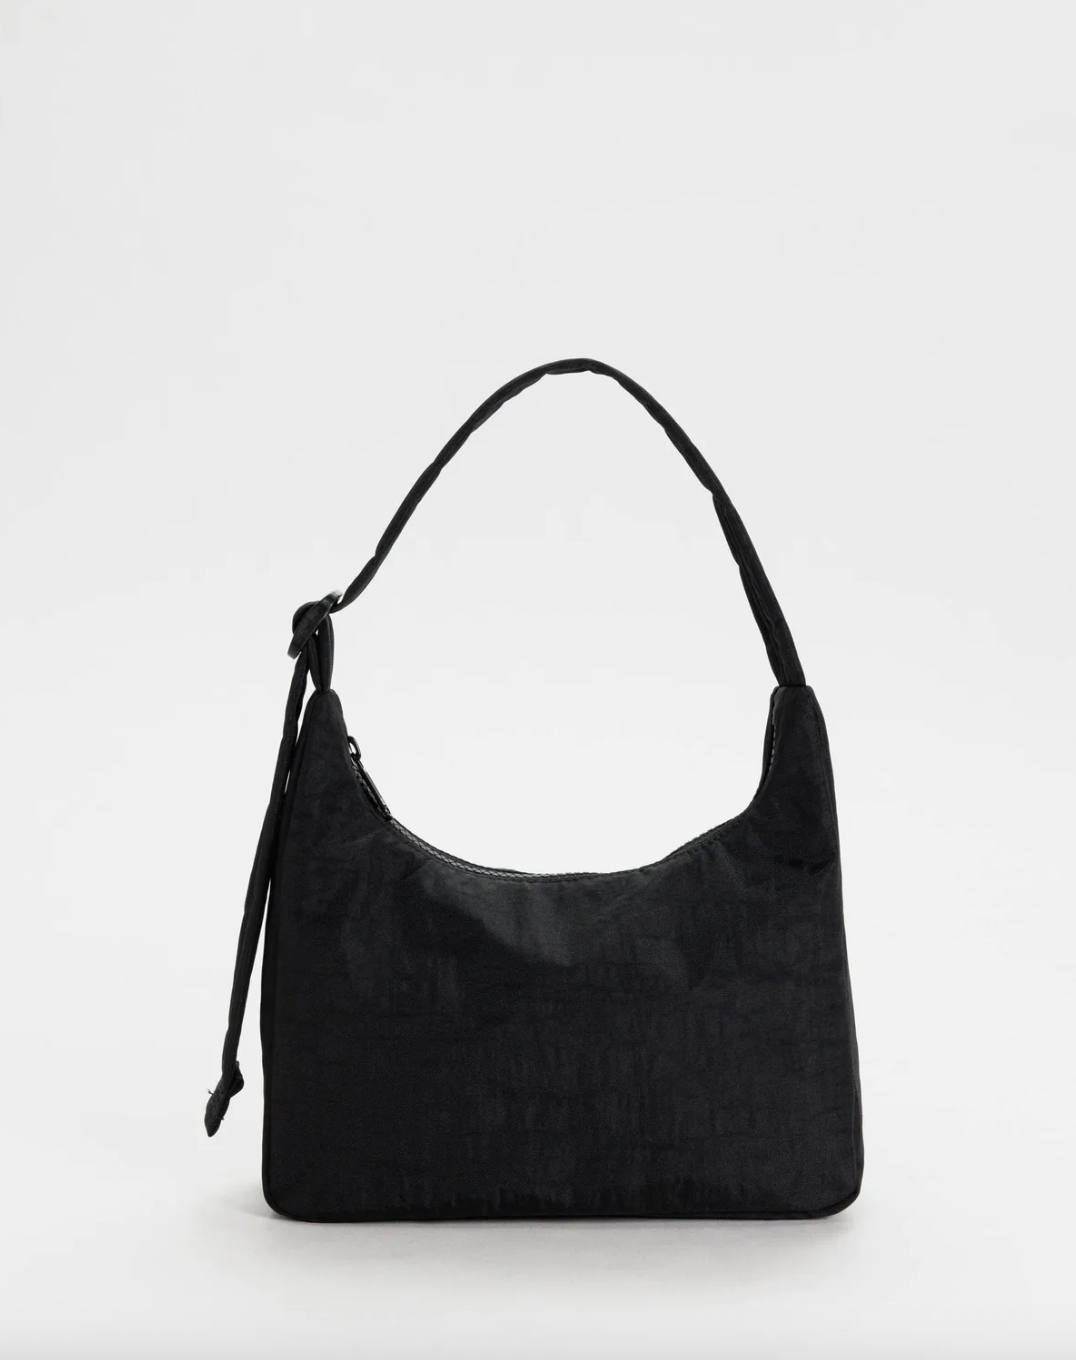 Buy Women Black, White Nylon Sling Bag online